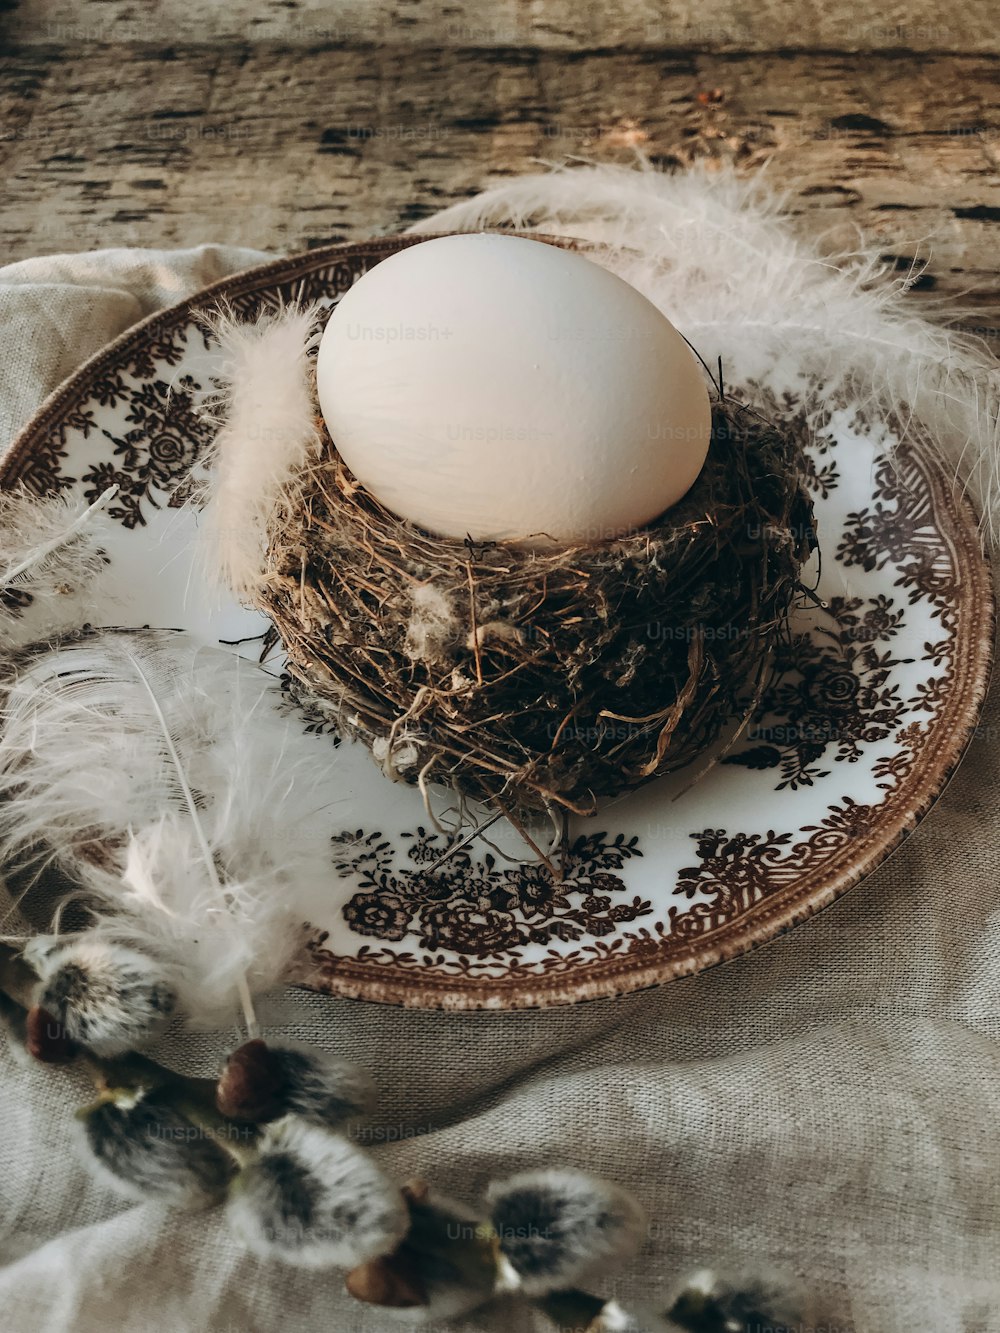 Cadre de table de Pâques rustique élégant. Oeuf de Pâques naturel dans un nid avec des plumes douces sur assiette vintage, serviette en lin, branches de saule chatte sur bois vieilli. Nature morte rurale de Pâques. Joyeuses Pâques